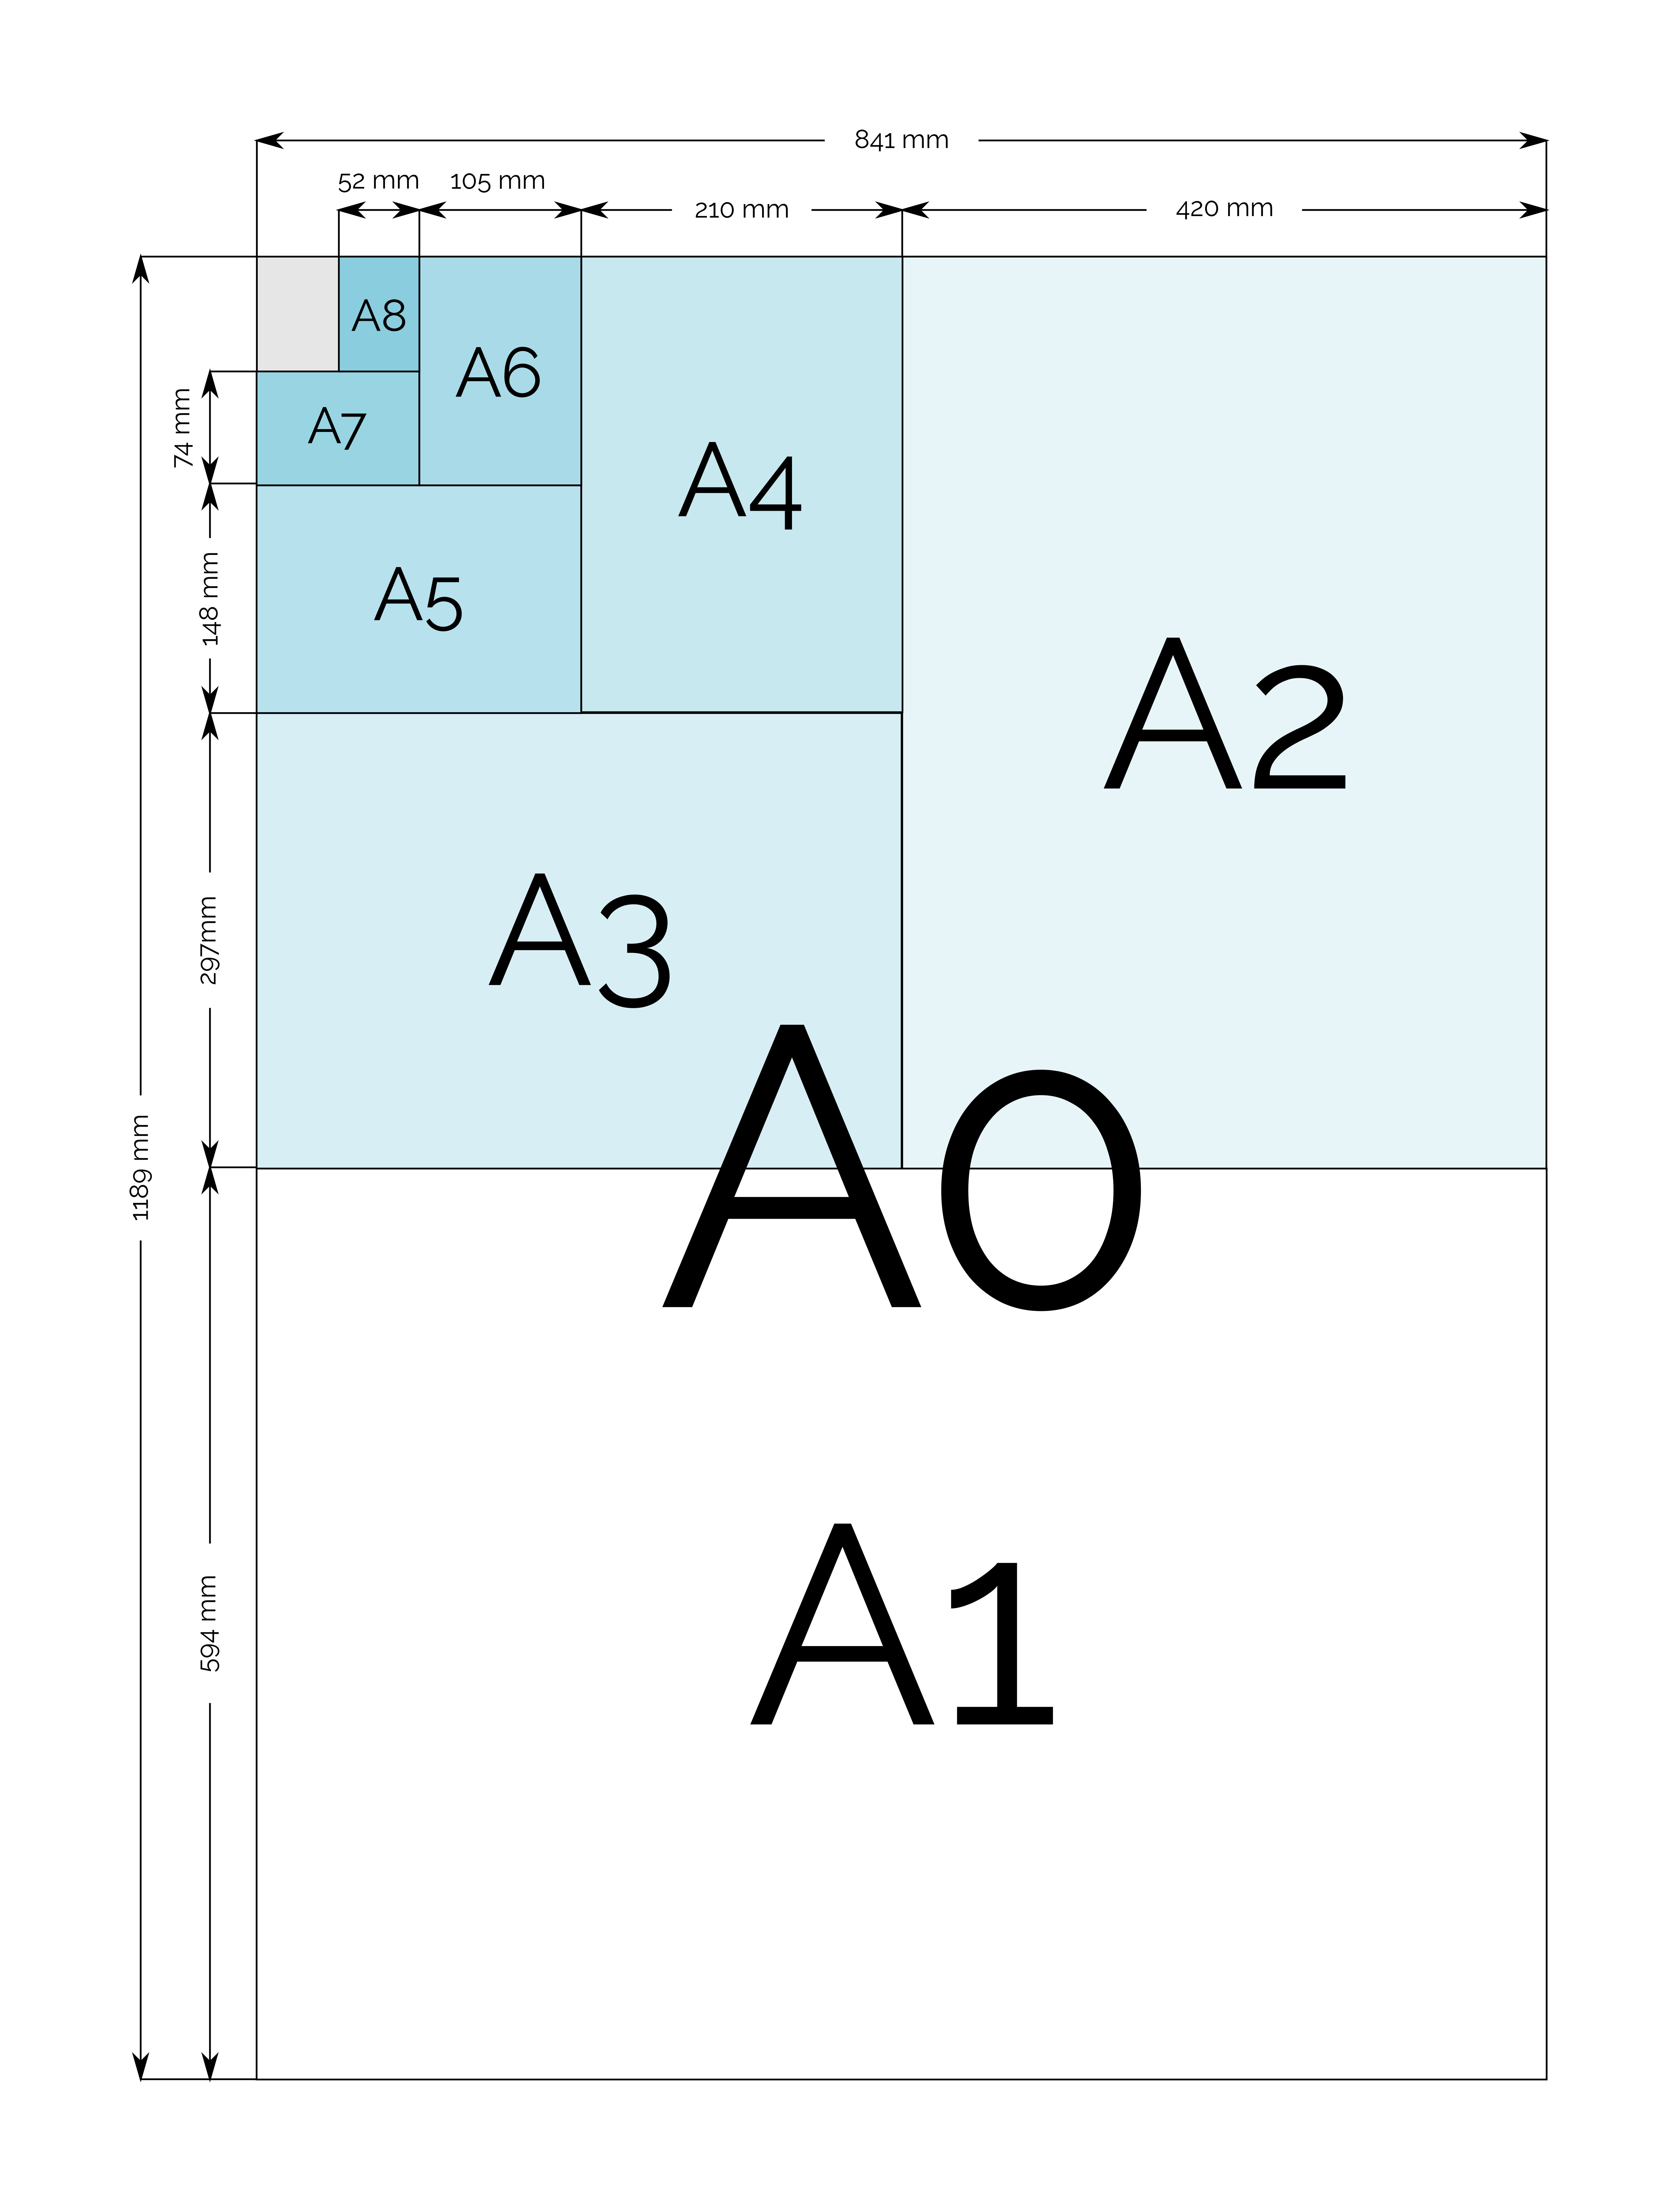 A Paper Sizes And Dimensions A0, A1, A2, A3, A4, A5, A6, A7, A8, A9